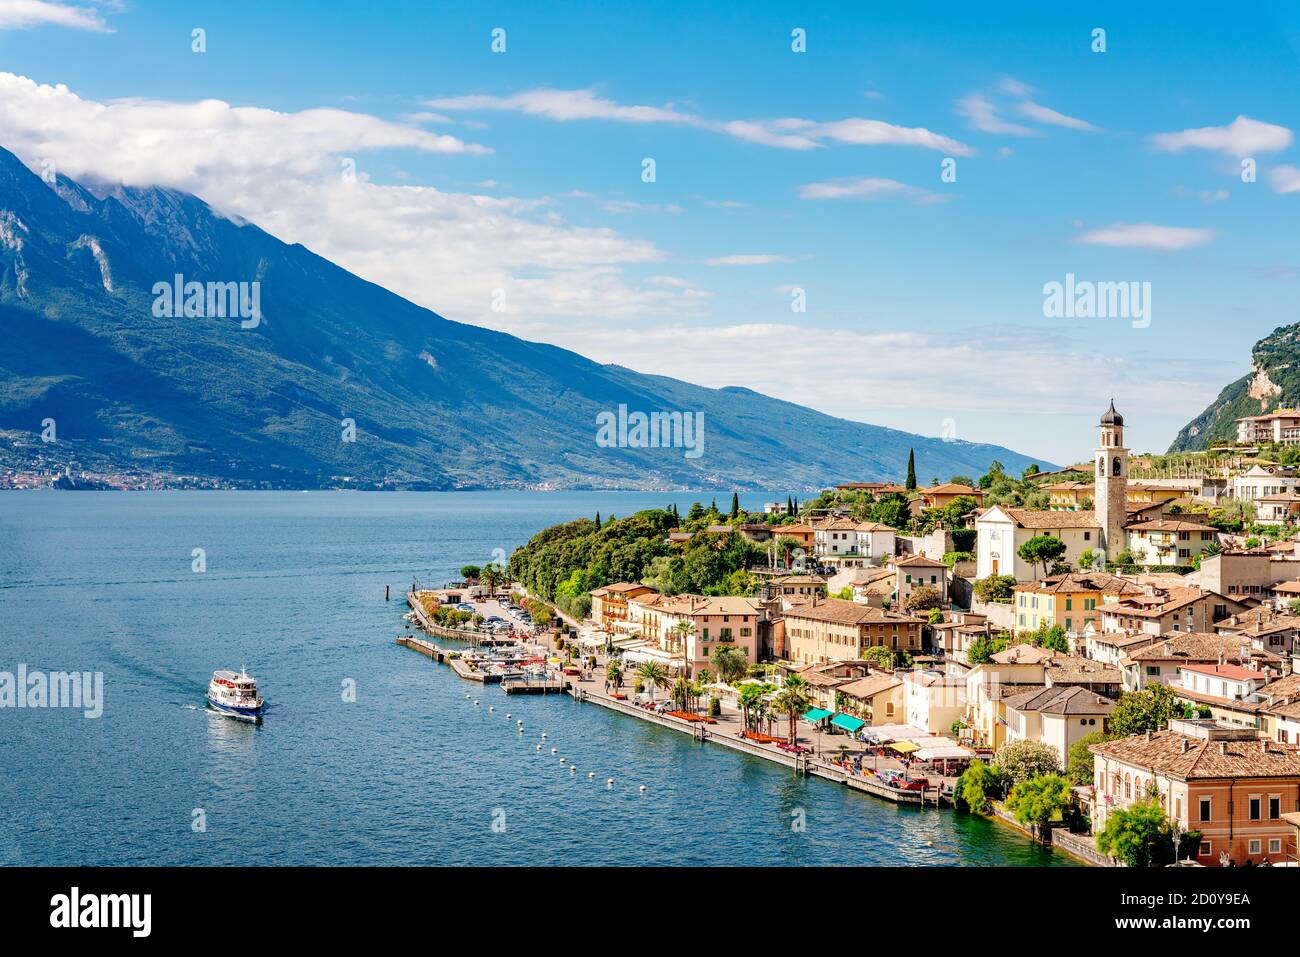 Limone, ville sur le lac de Garde, Lombardie, Italie Banque D'Images